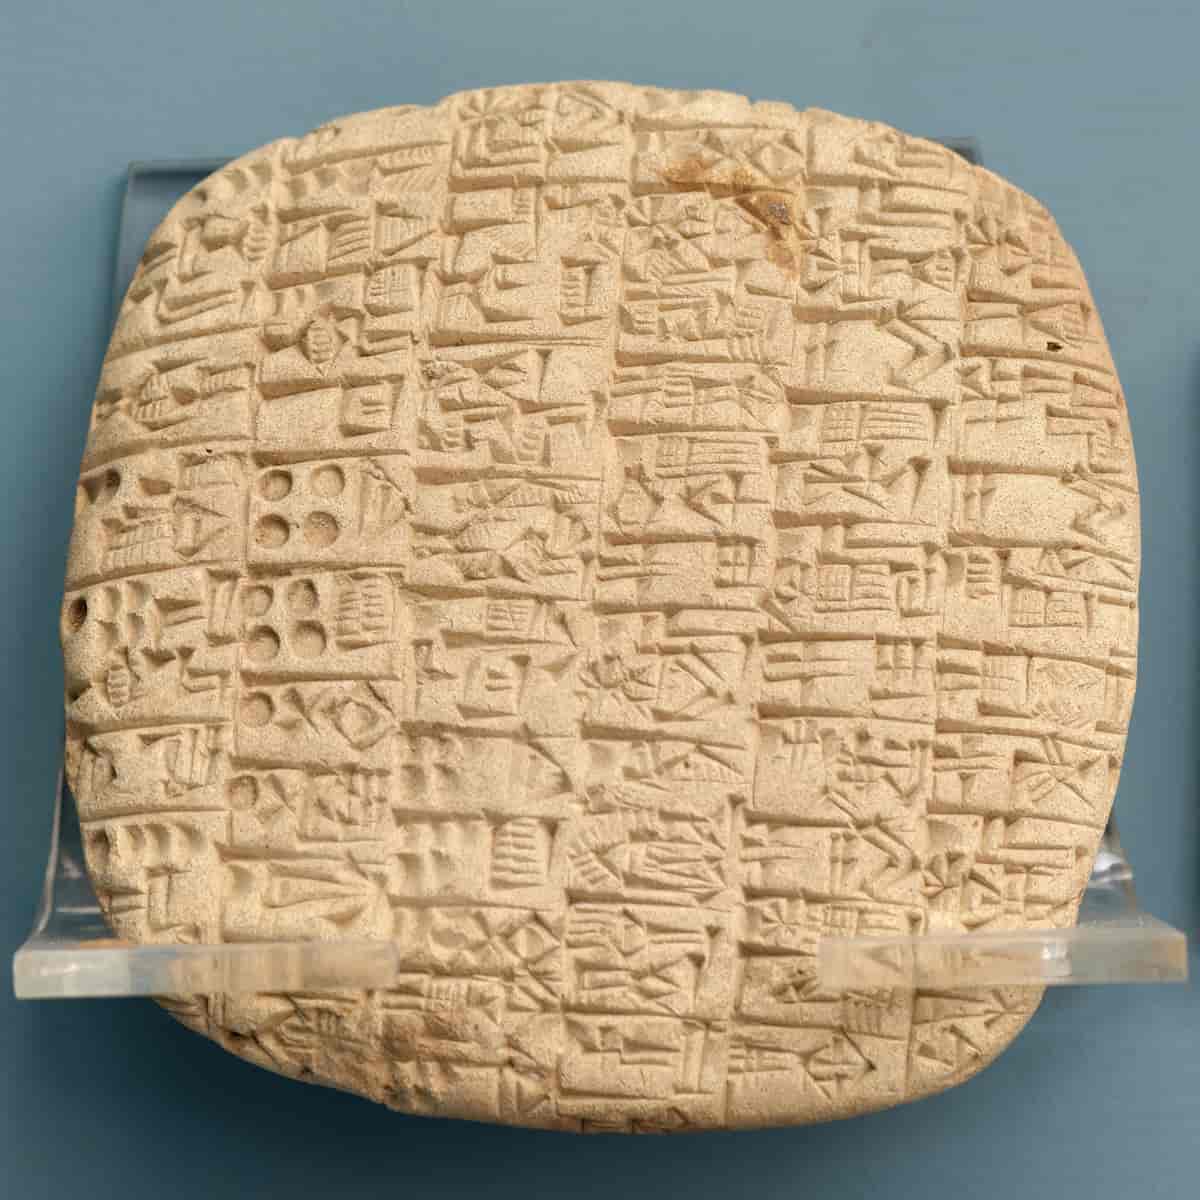 Sumerisk tekst frå rundt 2500 fvt. frå Sjuruppak. Teksten er delt i seks kolonnar og er eit økonomisk oversyn over ulike mengder med bygg, mjøl, brød og øl.